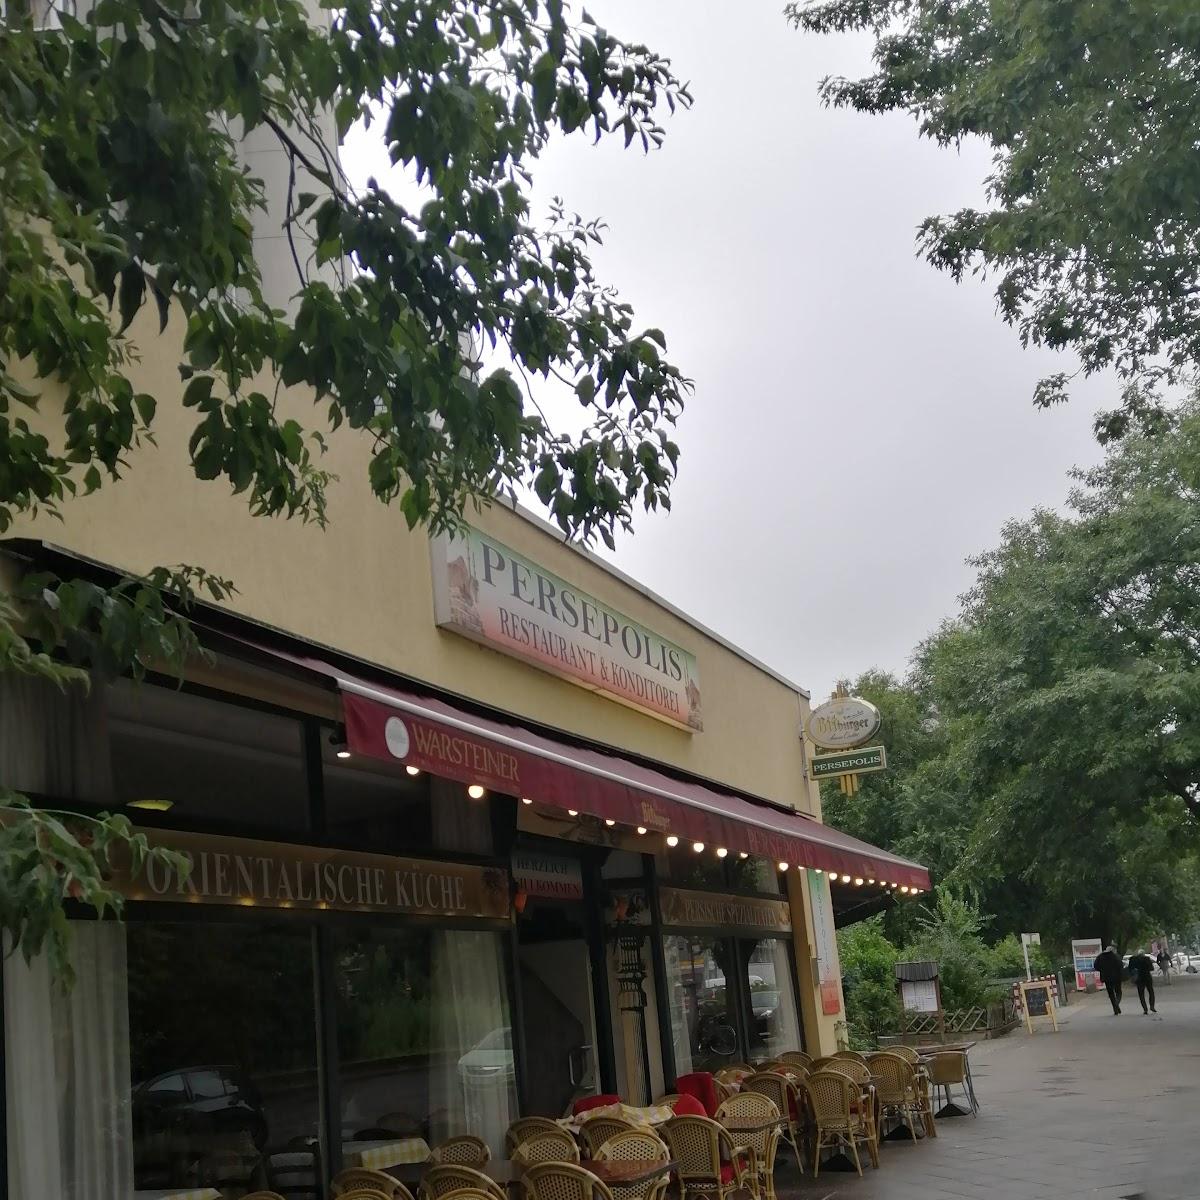 Restaurant "Restaurant & Supermarket Persepolis" in Berlin